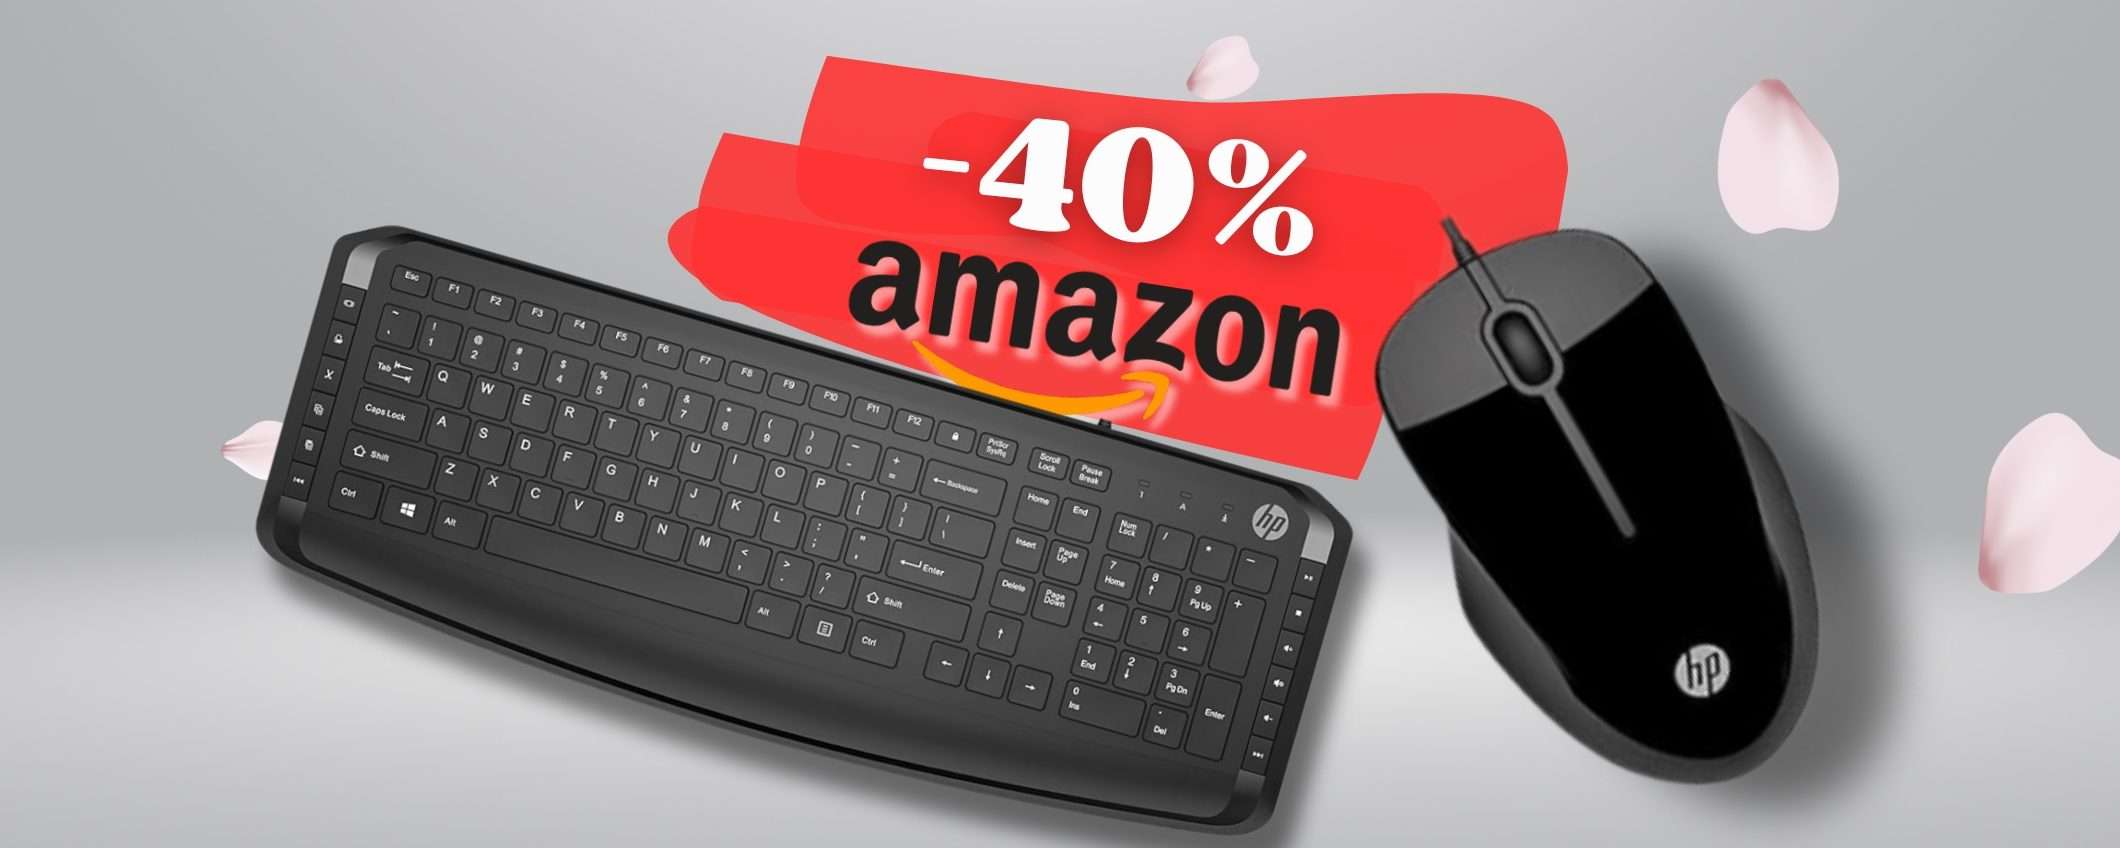 Scrivania NUOVA con mouse e tastiera HP SCONTATISSIMI del 40%